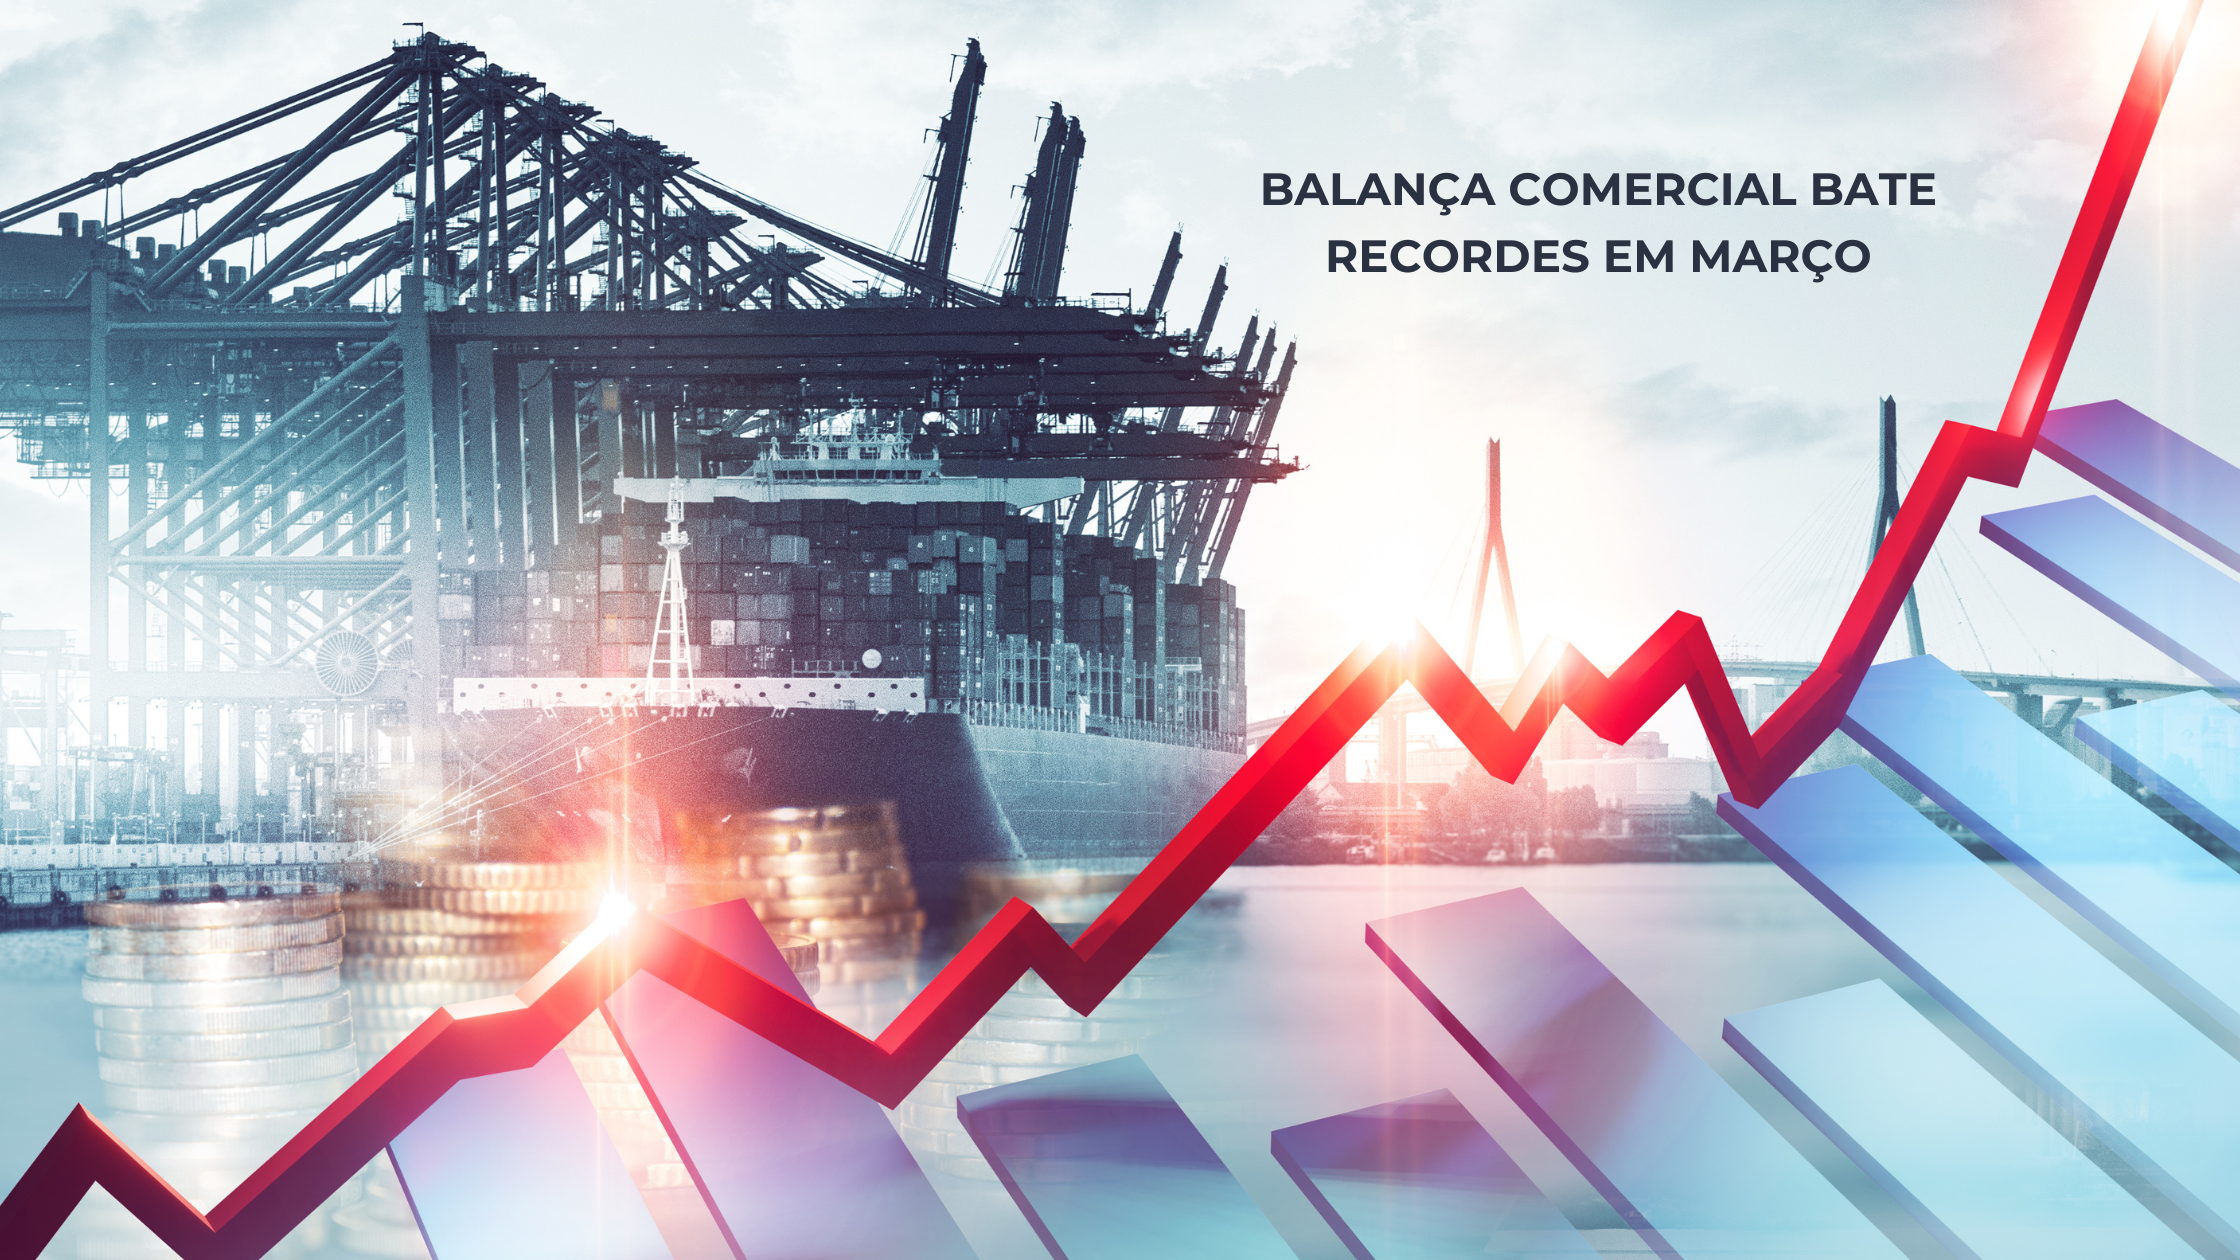 BALANÇA COMERCIAL BATE RECORDES EM MARÇO